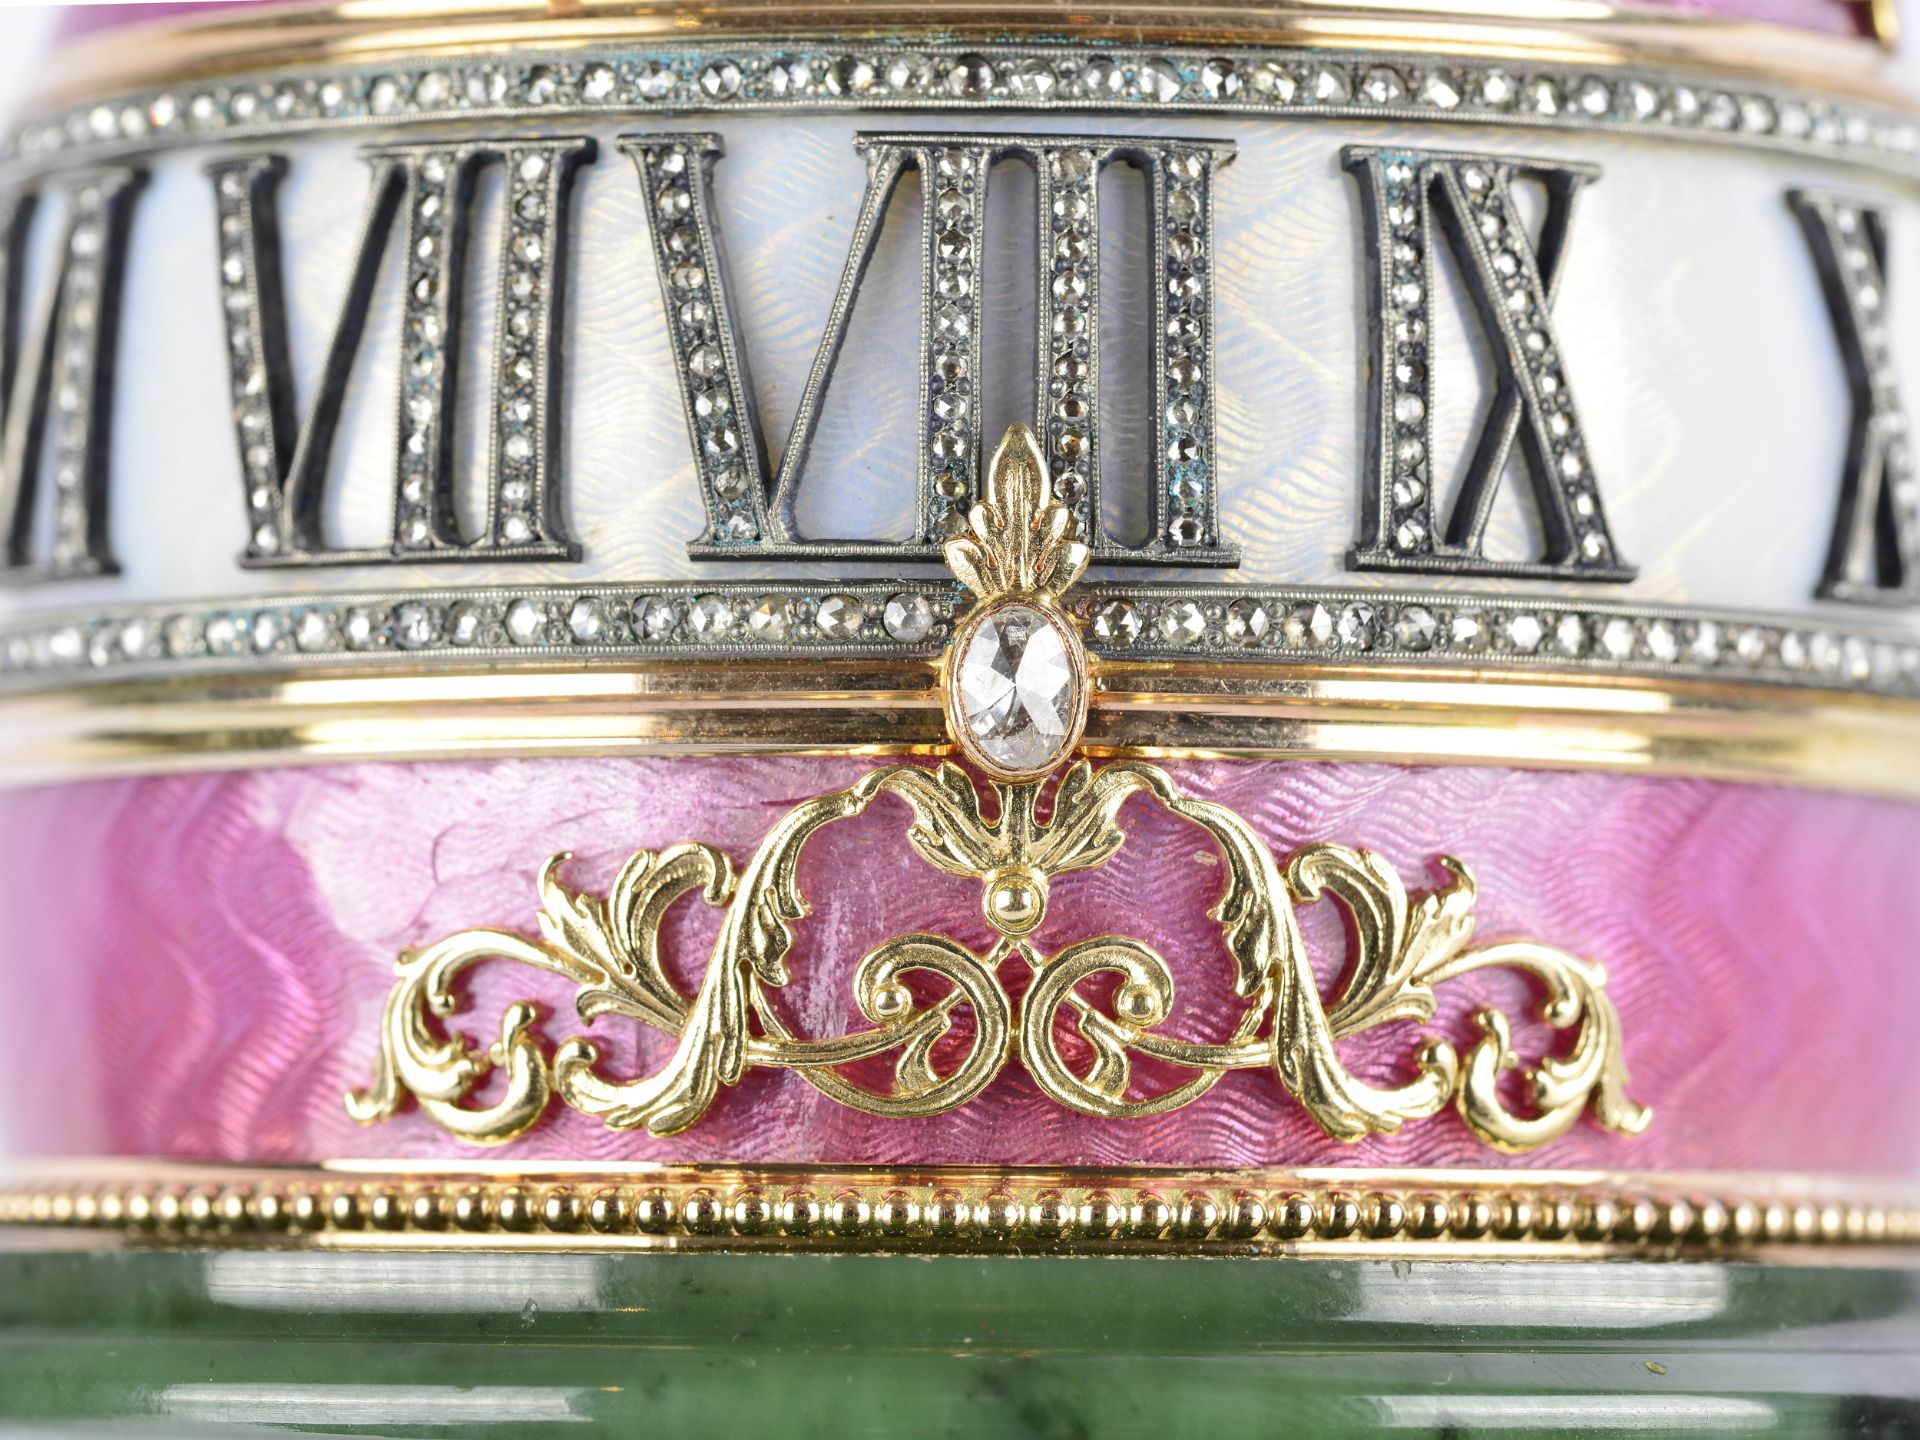 Hochbedeutendes Unikat einer Kolonnaden-Uhr, im Stil von Peter Carl Fabergé, Sankt Petersburg 1846 - - Bild 8 aus 17